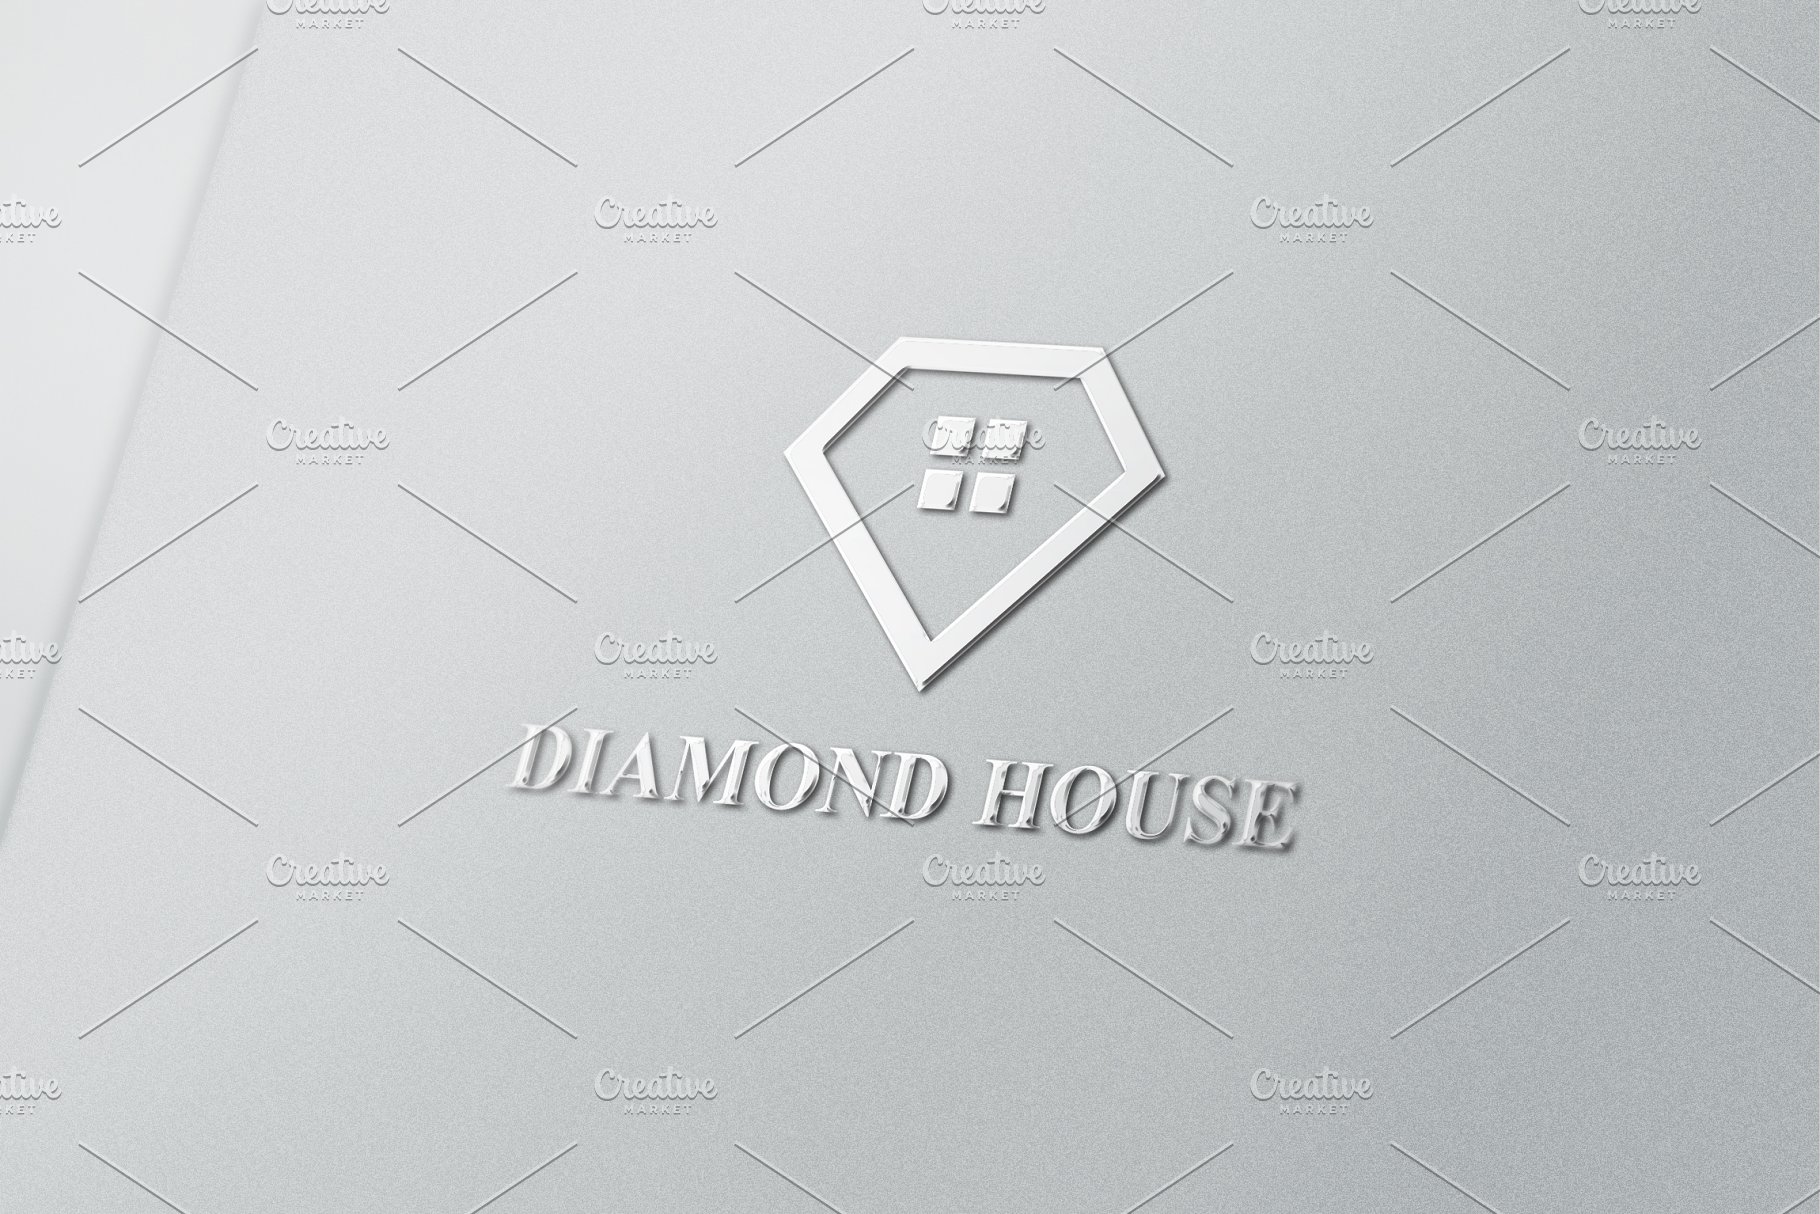 极简主义钻石房子Logo标志 Diamond House Logo插图(2)